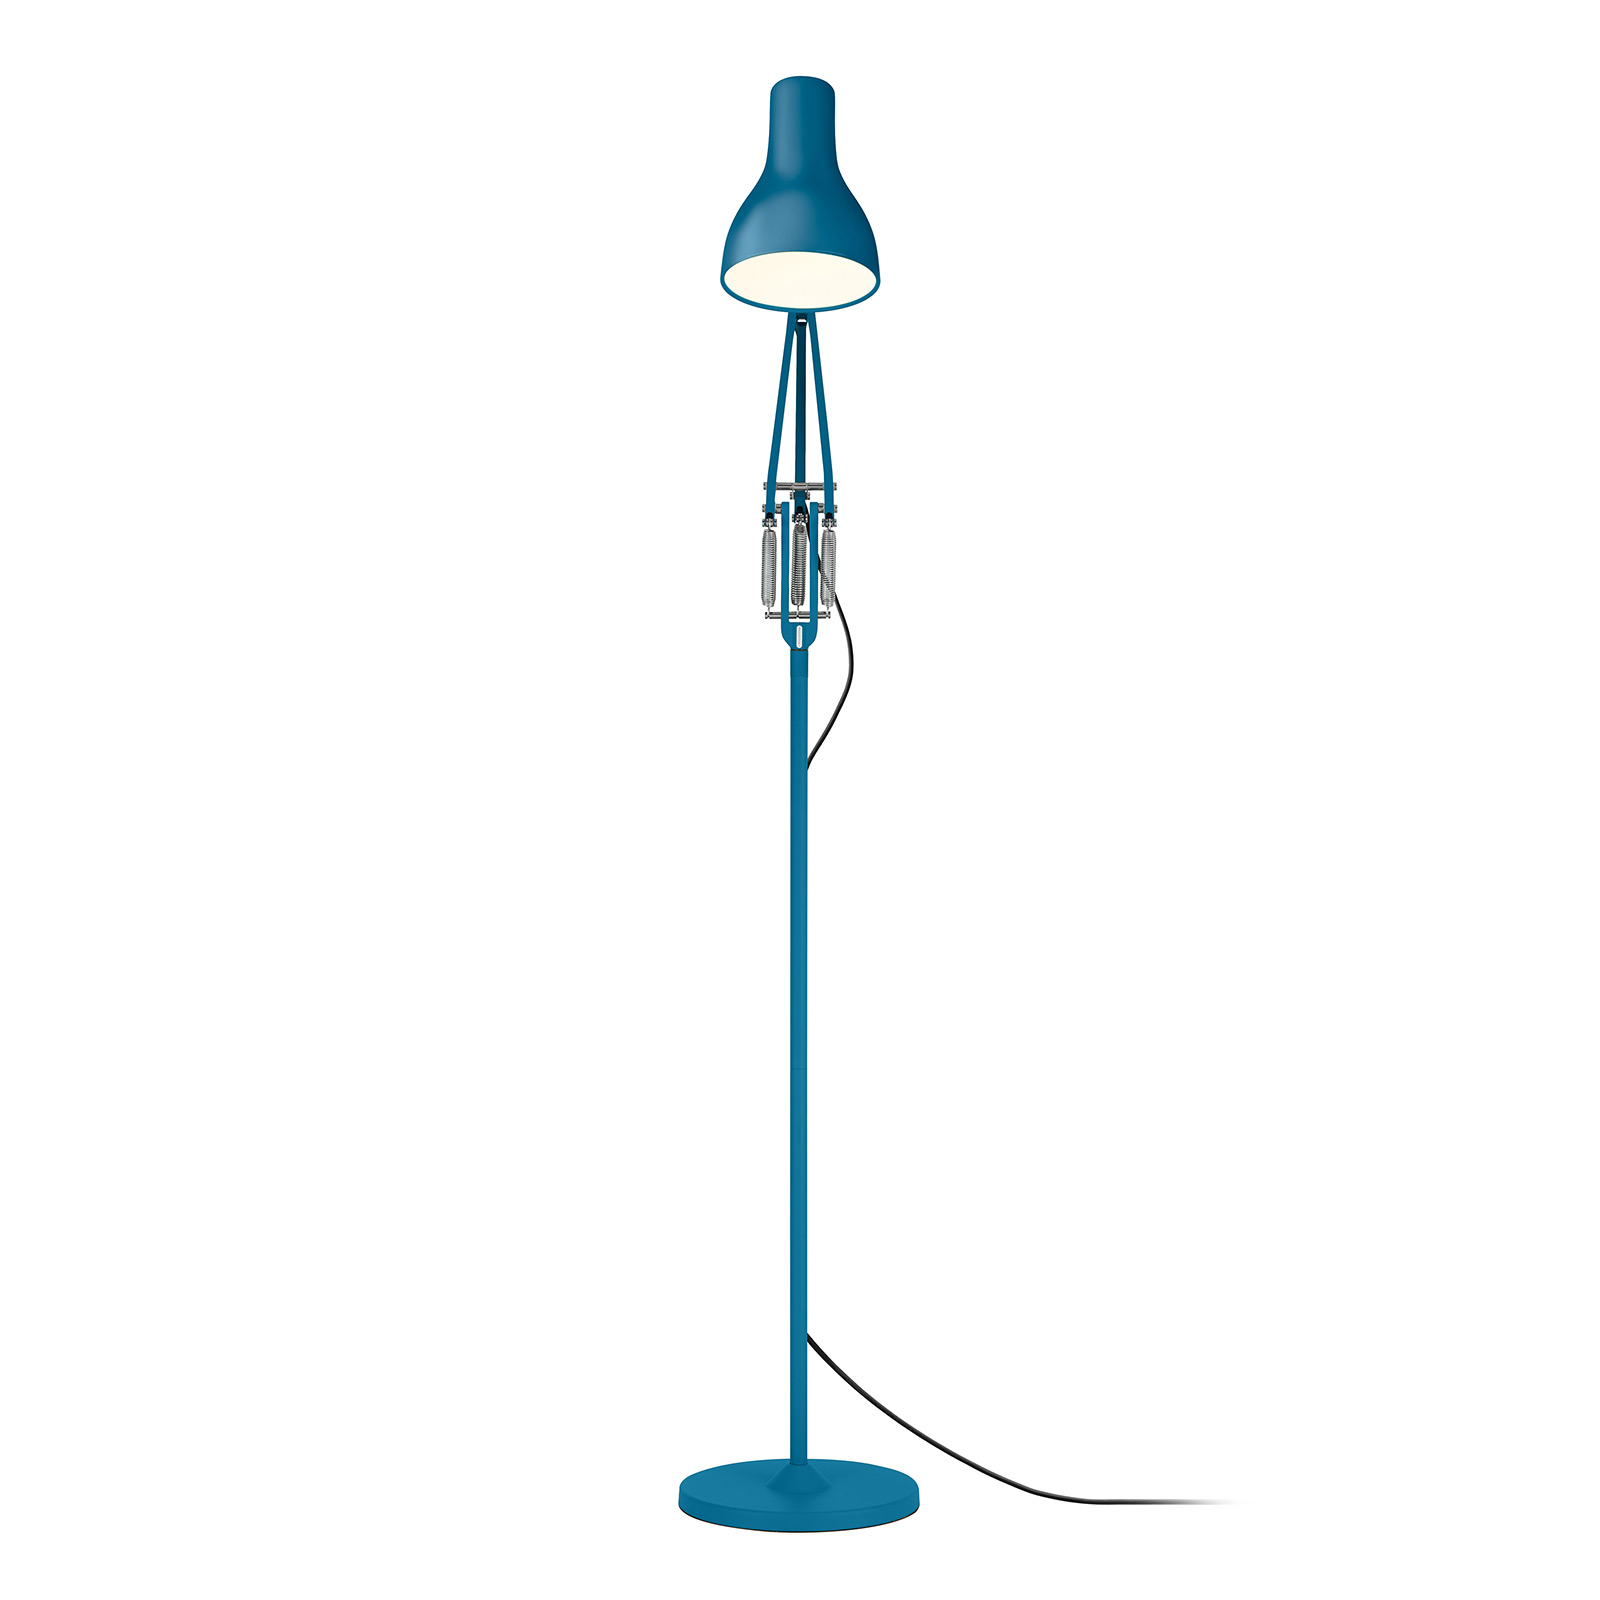 Anglepoise Type 75 vloerlamp Margaret Howell blauw